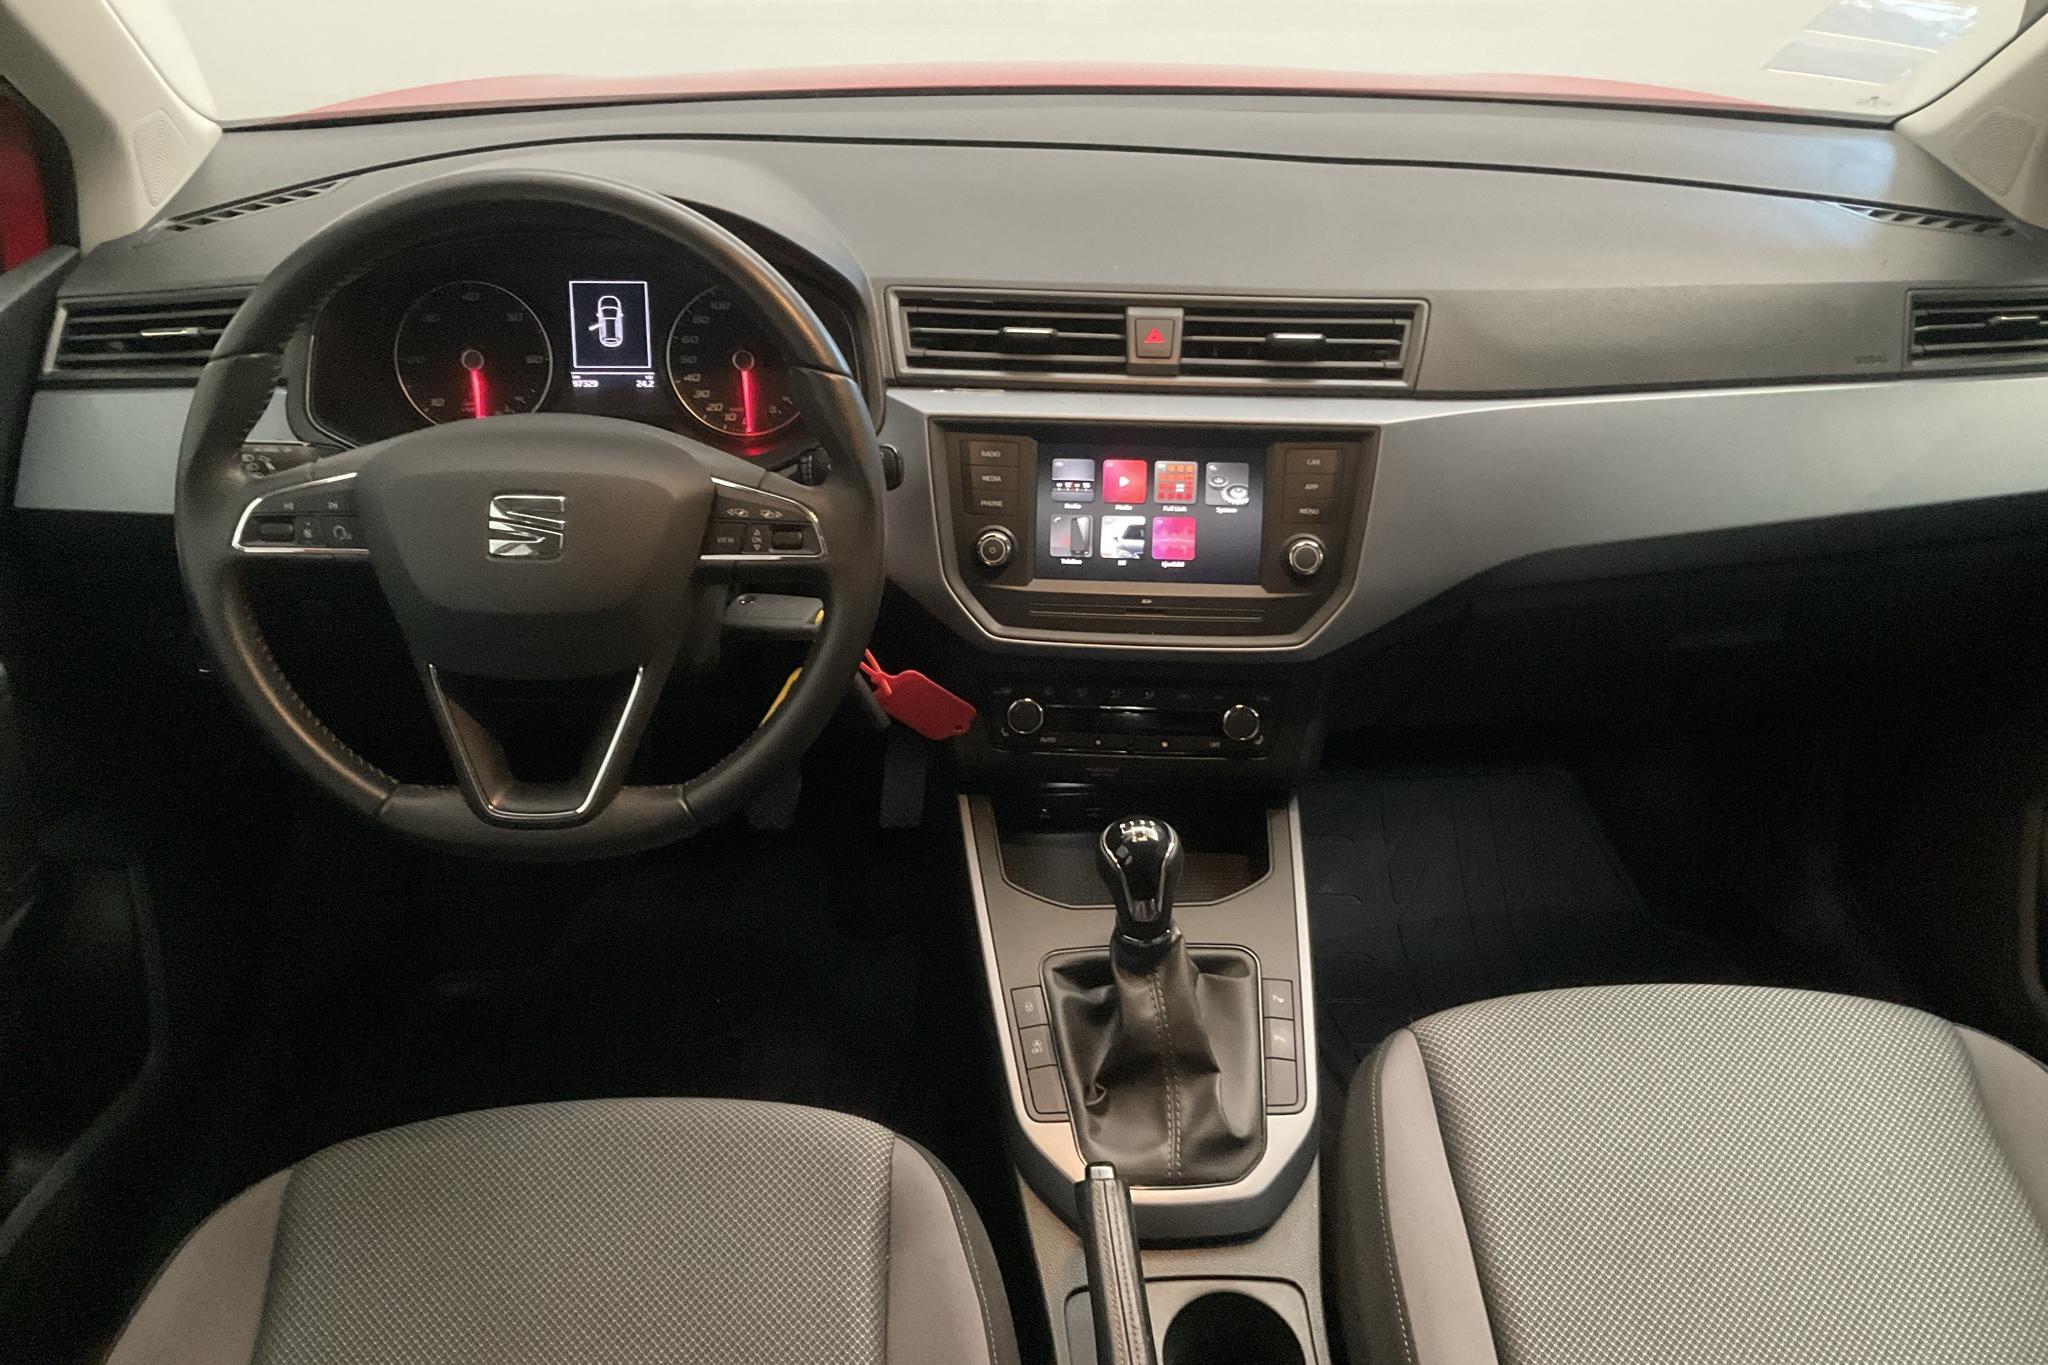 Seat Arona 1.6 TDI 5dr (95hk) - 97 320 km - Manual - red - 2020